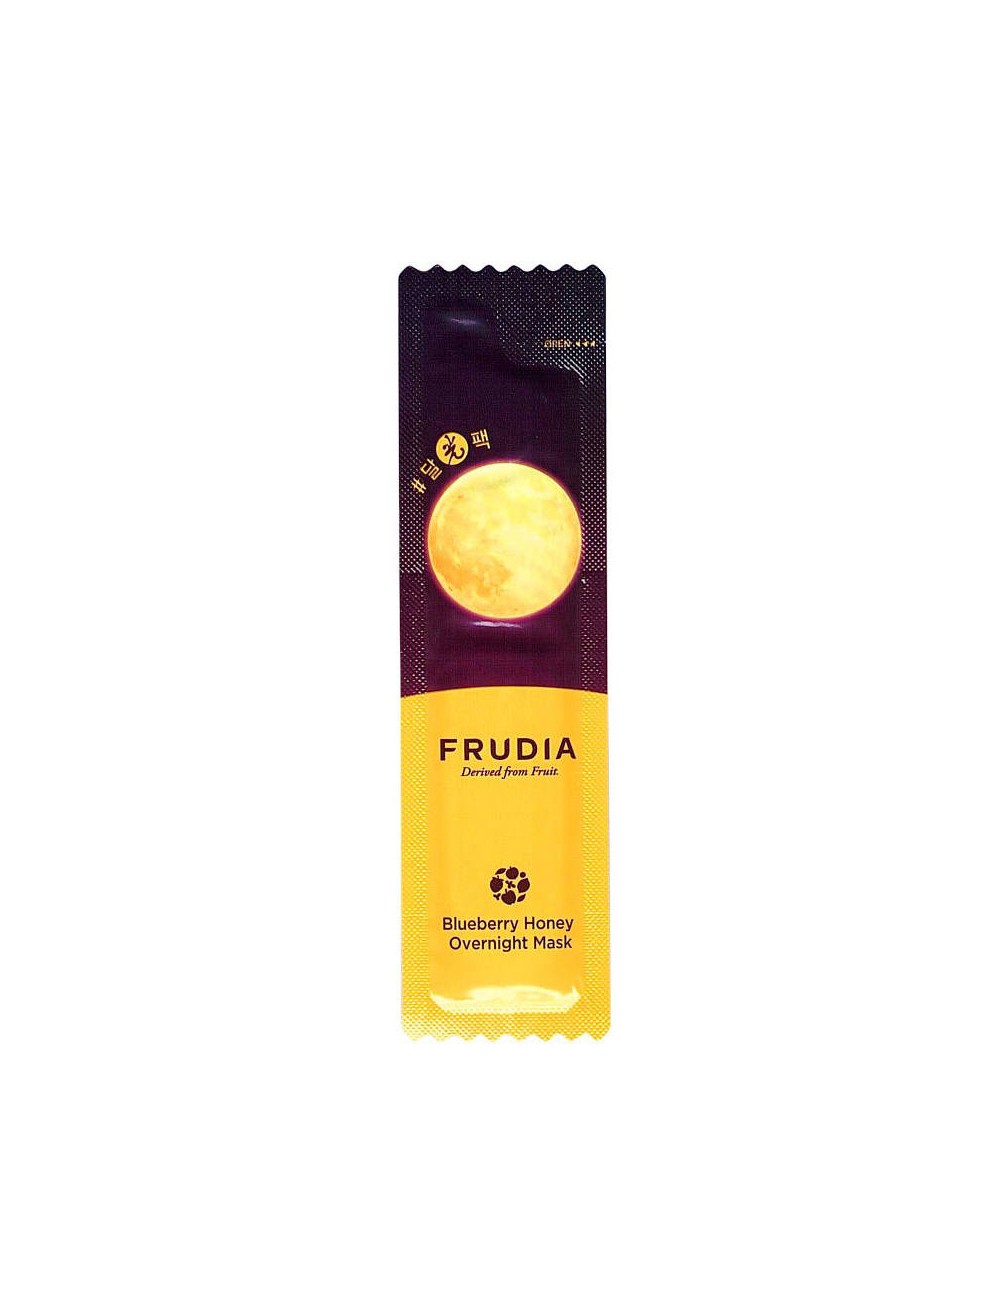 Tipo de piel al mejor precio: Frudia Blueberry Honey Overnight Mask 5ml- Hidratante y Luminosidad de Frudia en Skin Thinks - Piel Seca